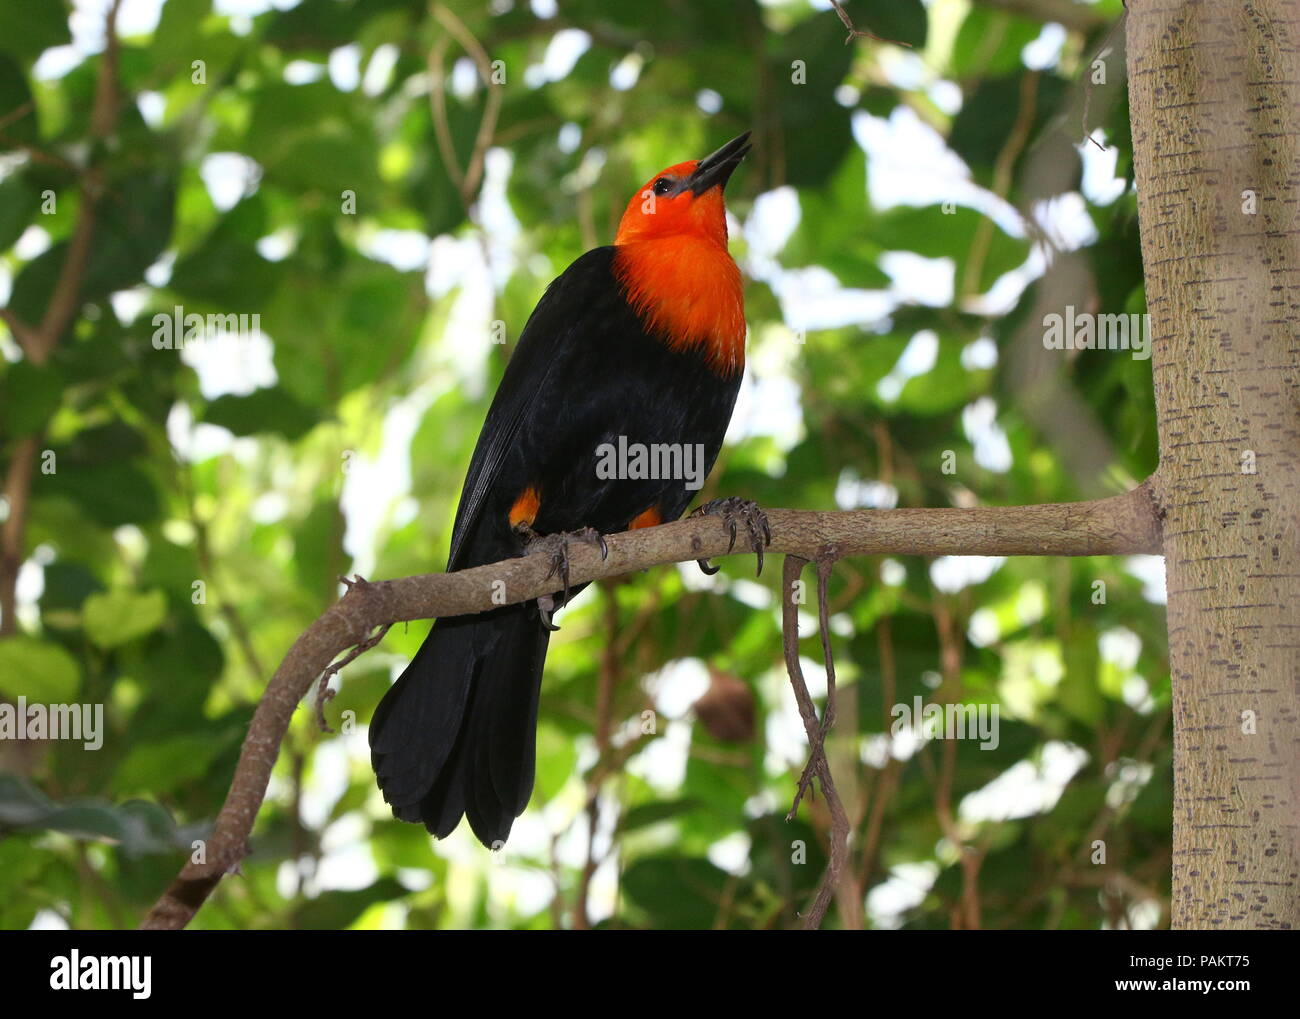 América del Sur o naranja Escarlata (Amblyramphus holosericeus encabezada Blackbird) en un árbol. Foto de stock